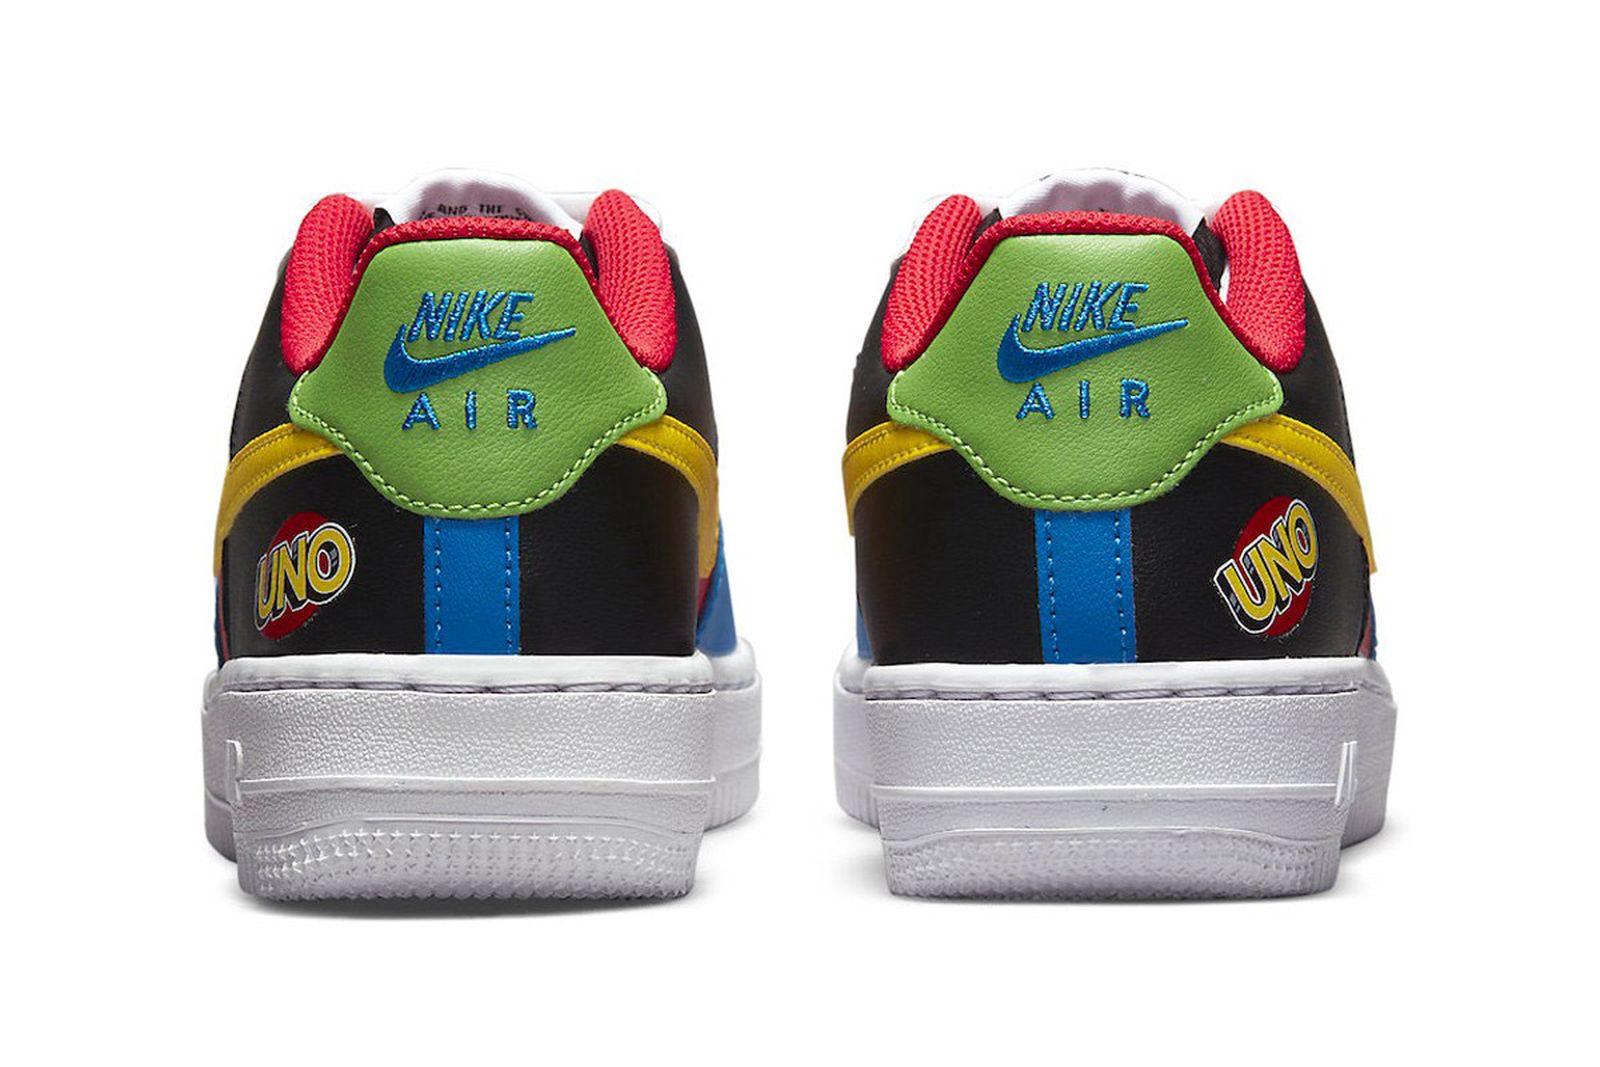 UNO x Nike Air Force 1 Low: Release Date, Info, Price الحمد لله رب العالمين